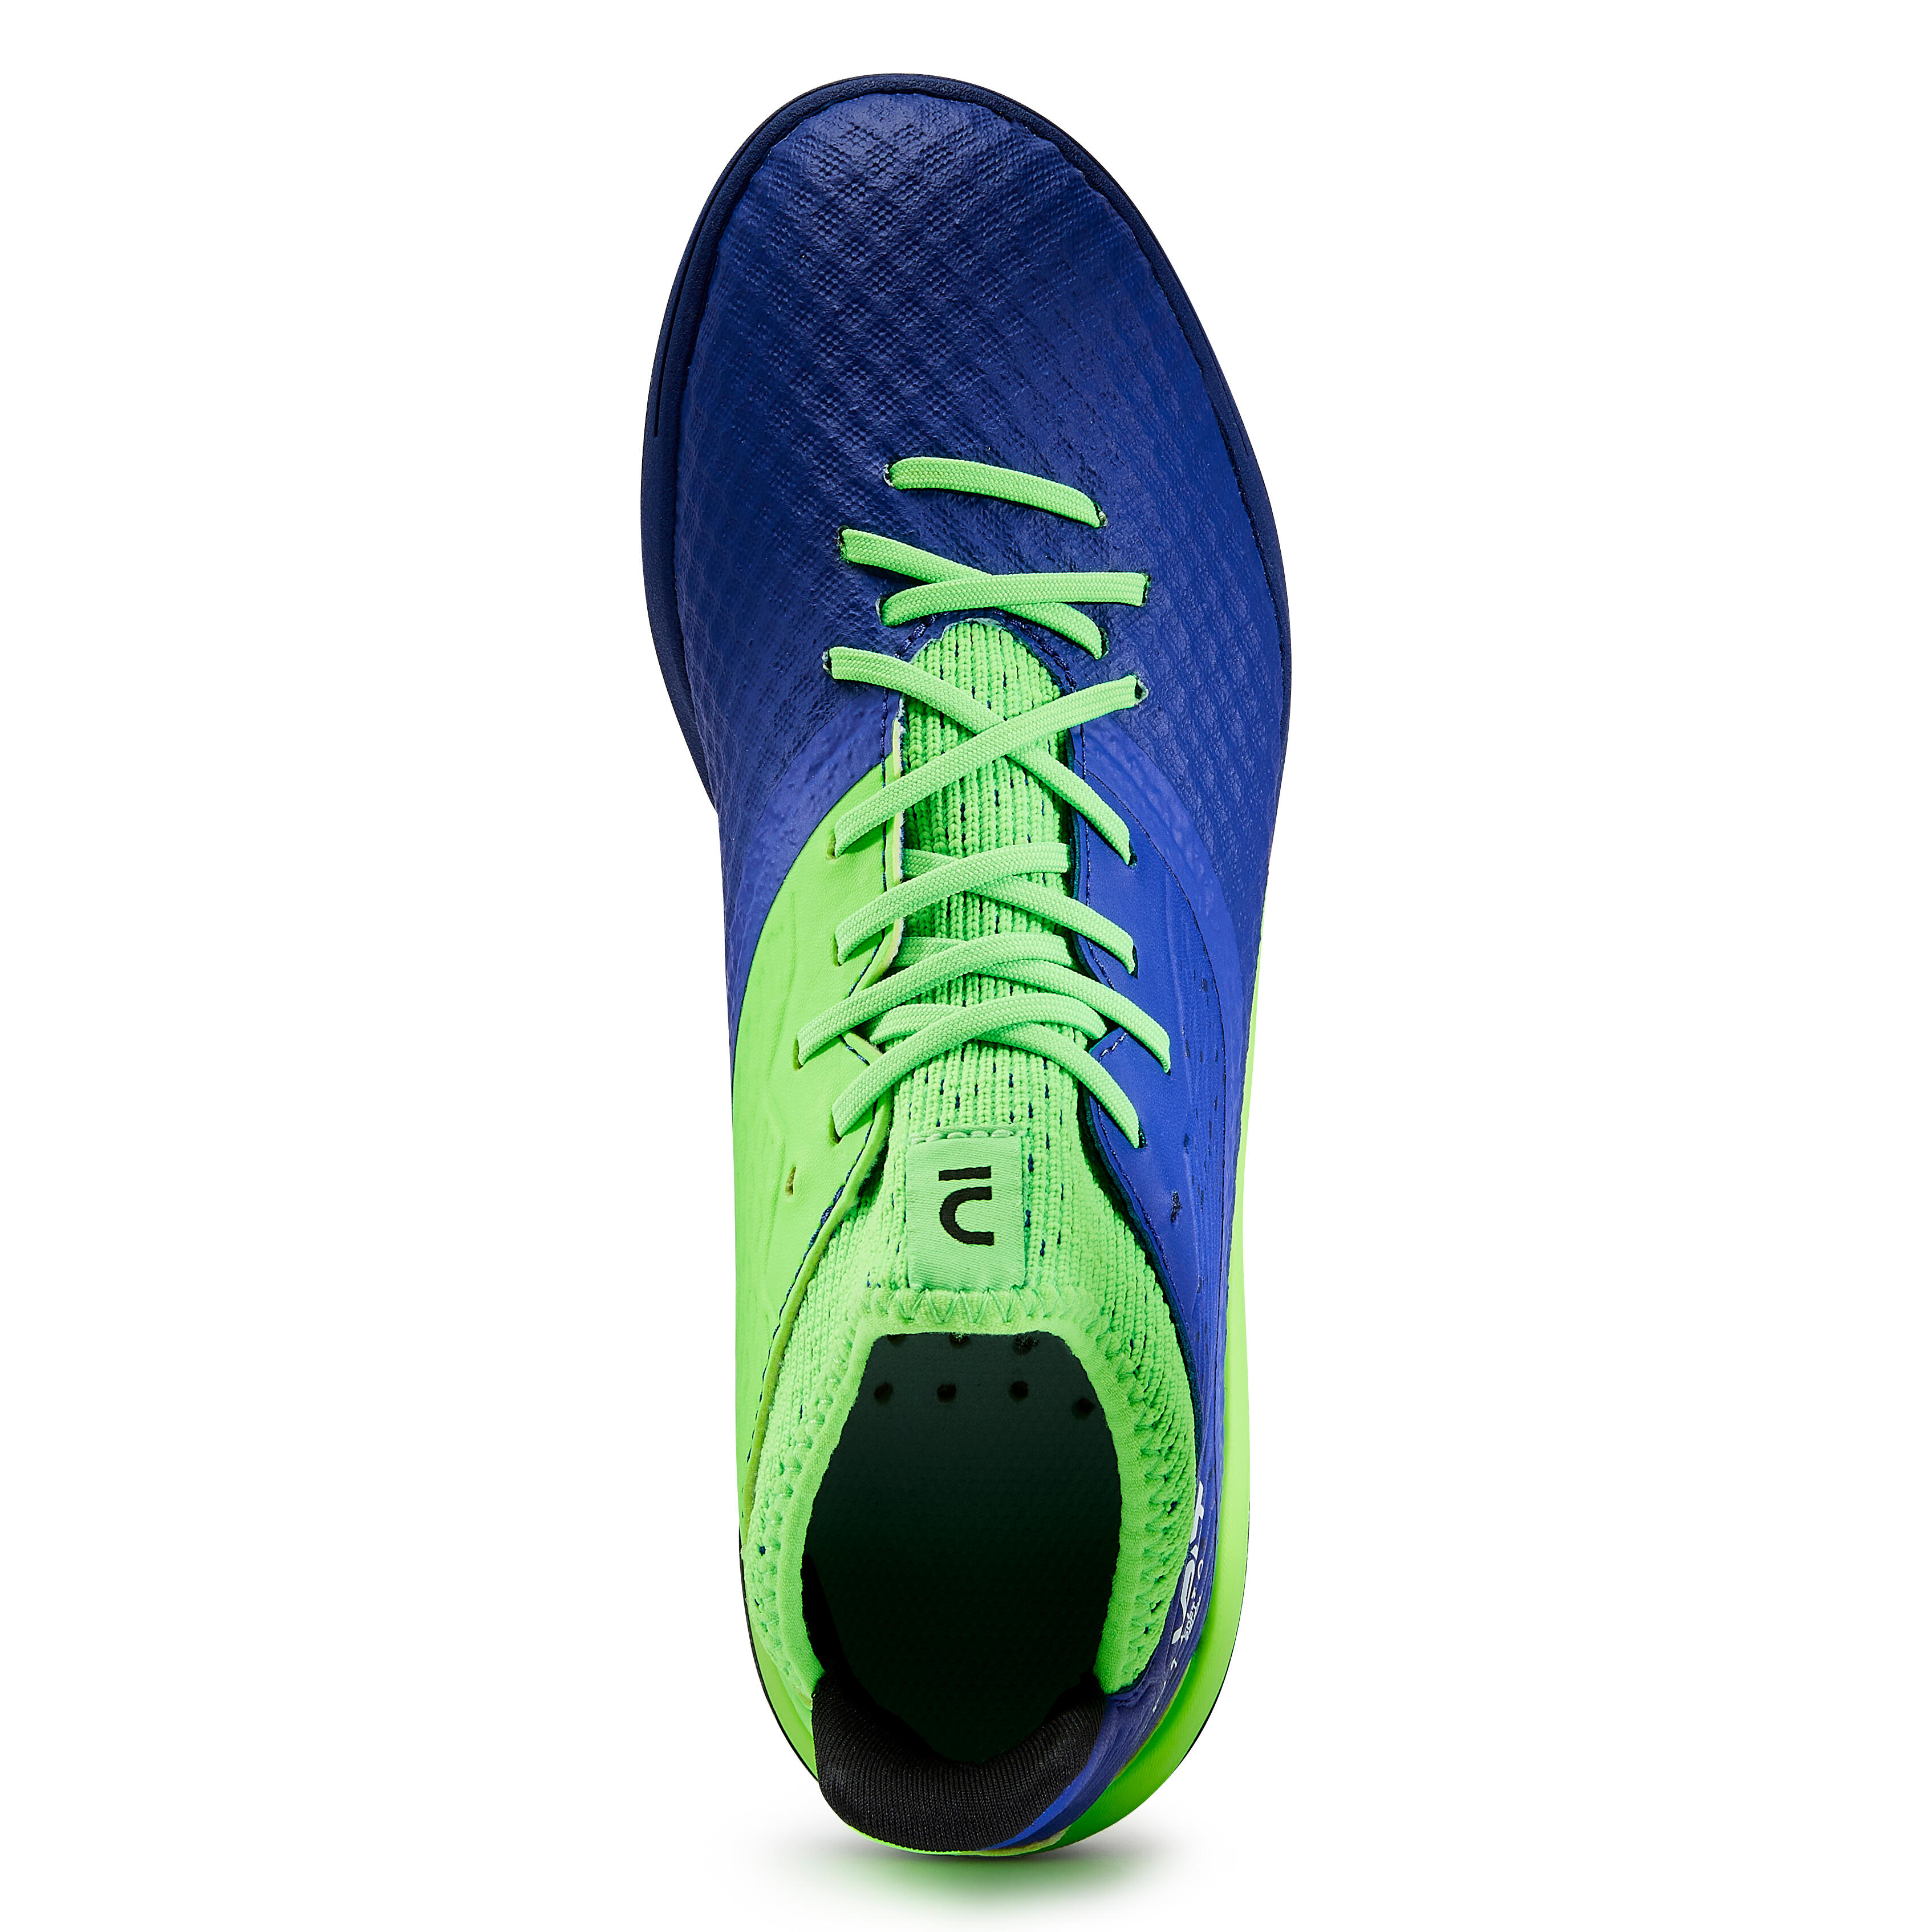 Chaussures de soccer pour terrain dur enfant - Viralto III TF bleu/vert - KIPSTA